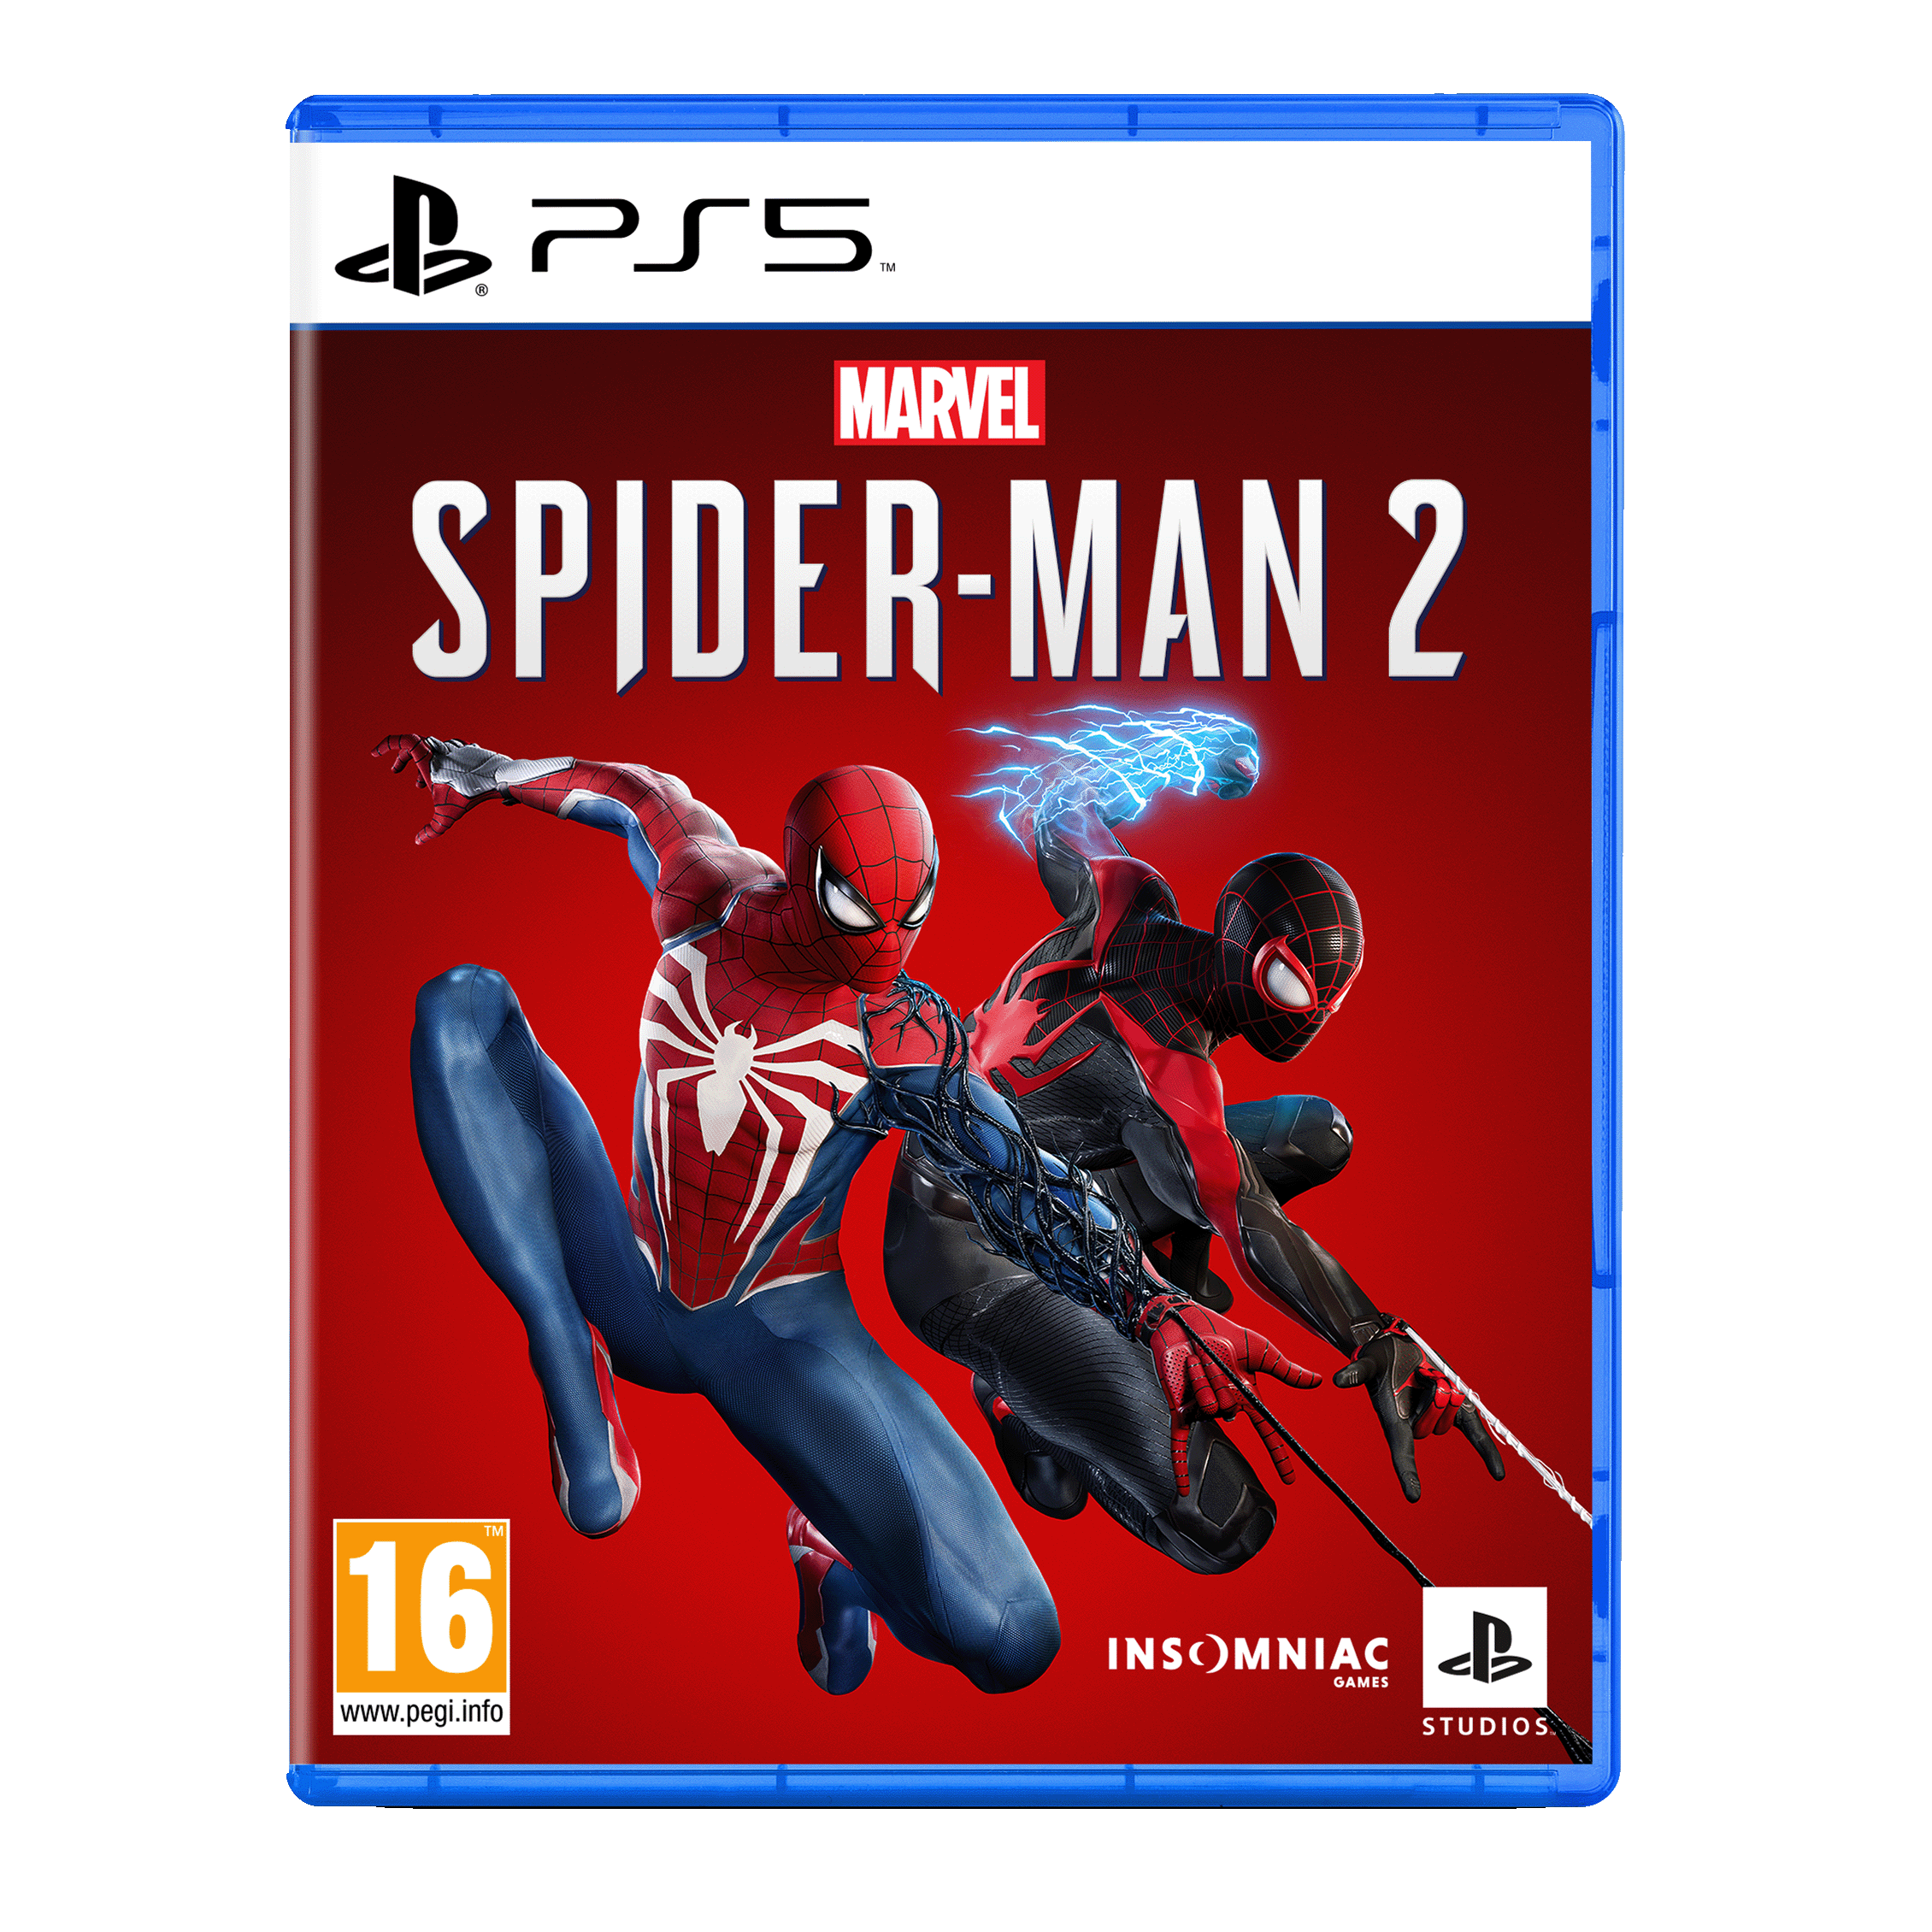 משחק לקונסולה בגרסאת מהדורת אספנים Sony PS5 Marvel's Spider-Man 2 